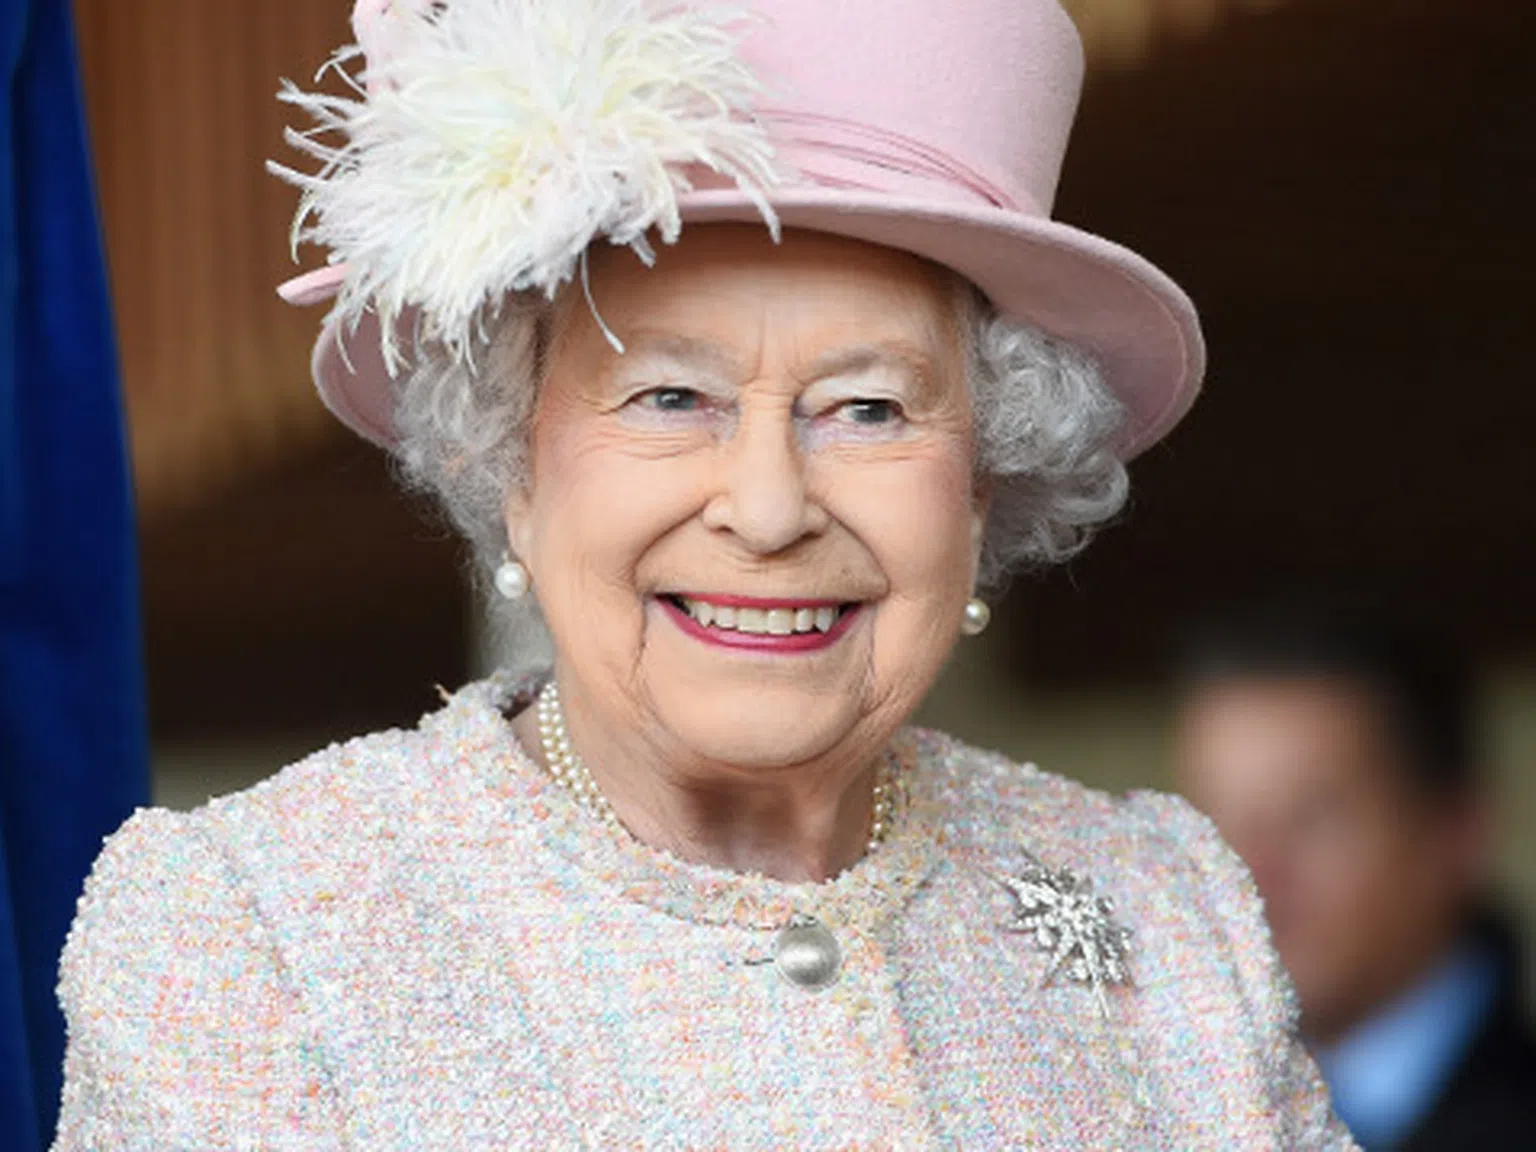 А кралица Елизабет язди в галоп вчeра. Ние сме в ШОК!